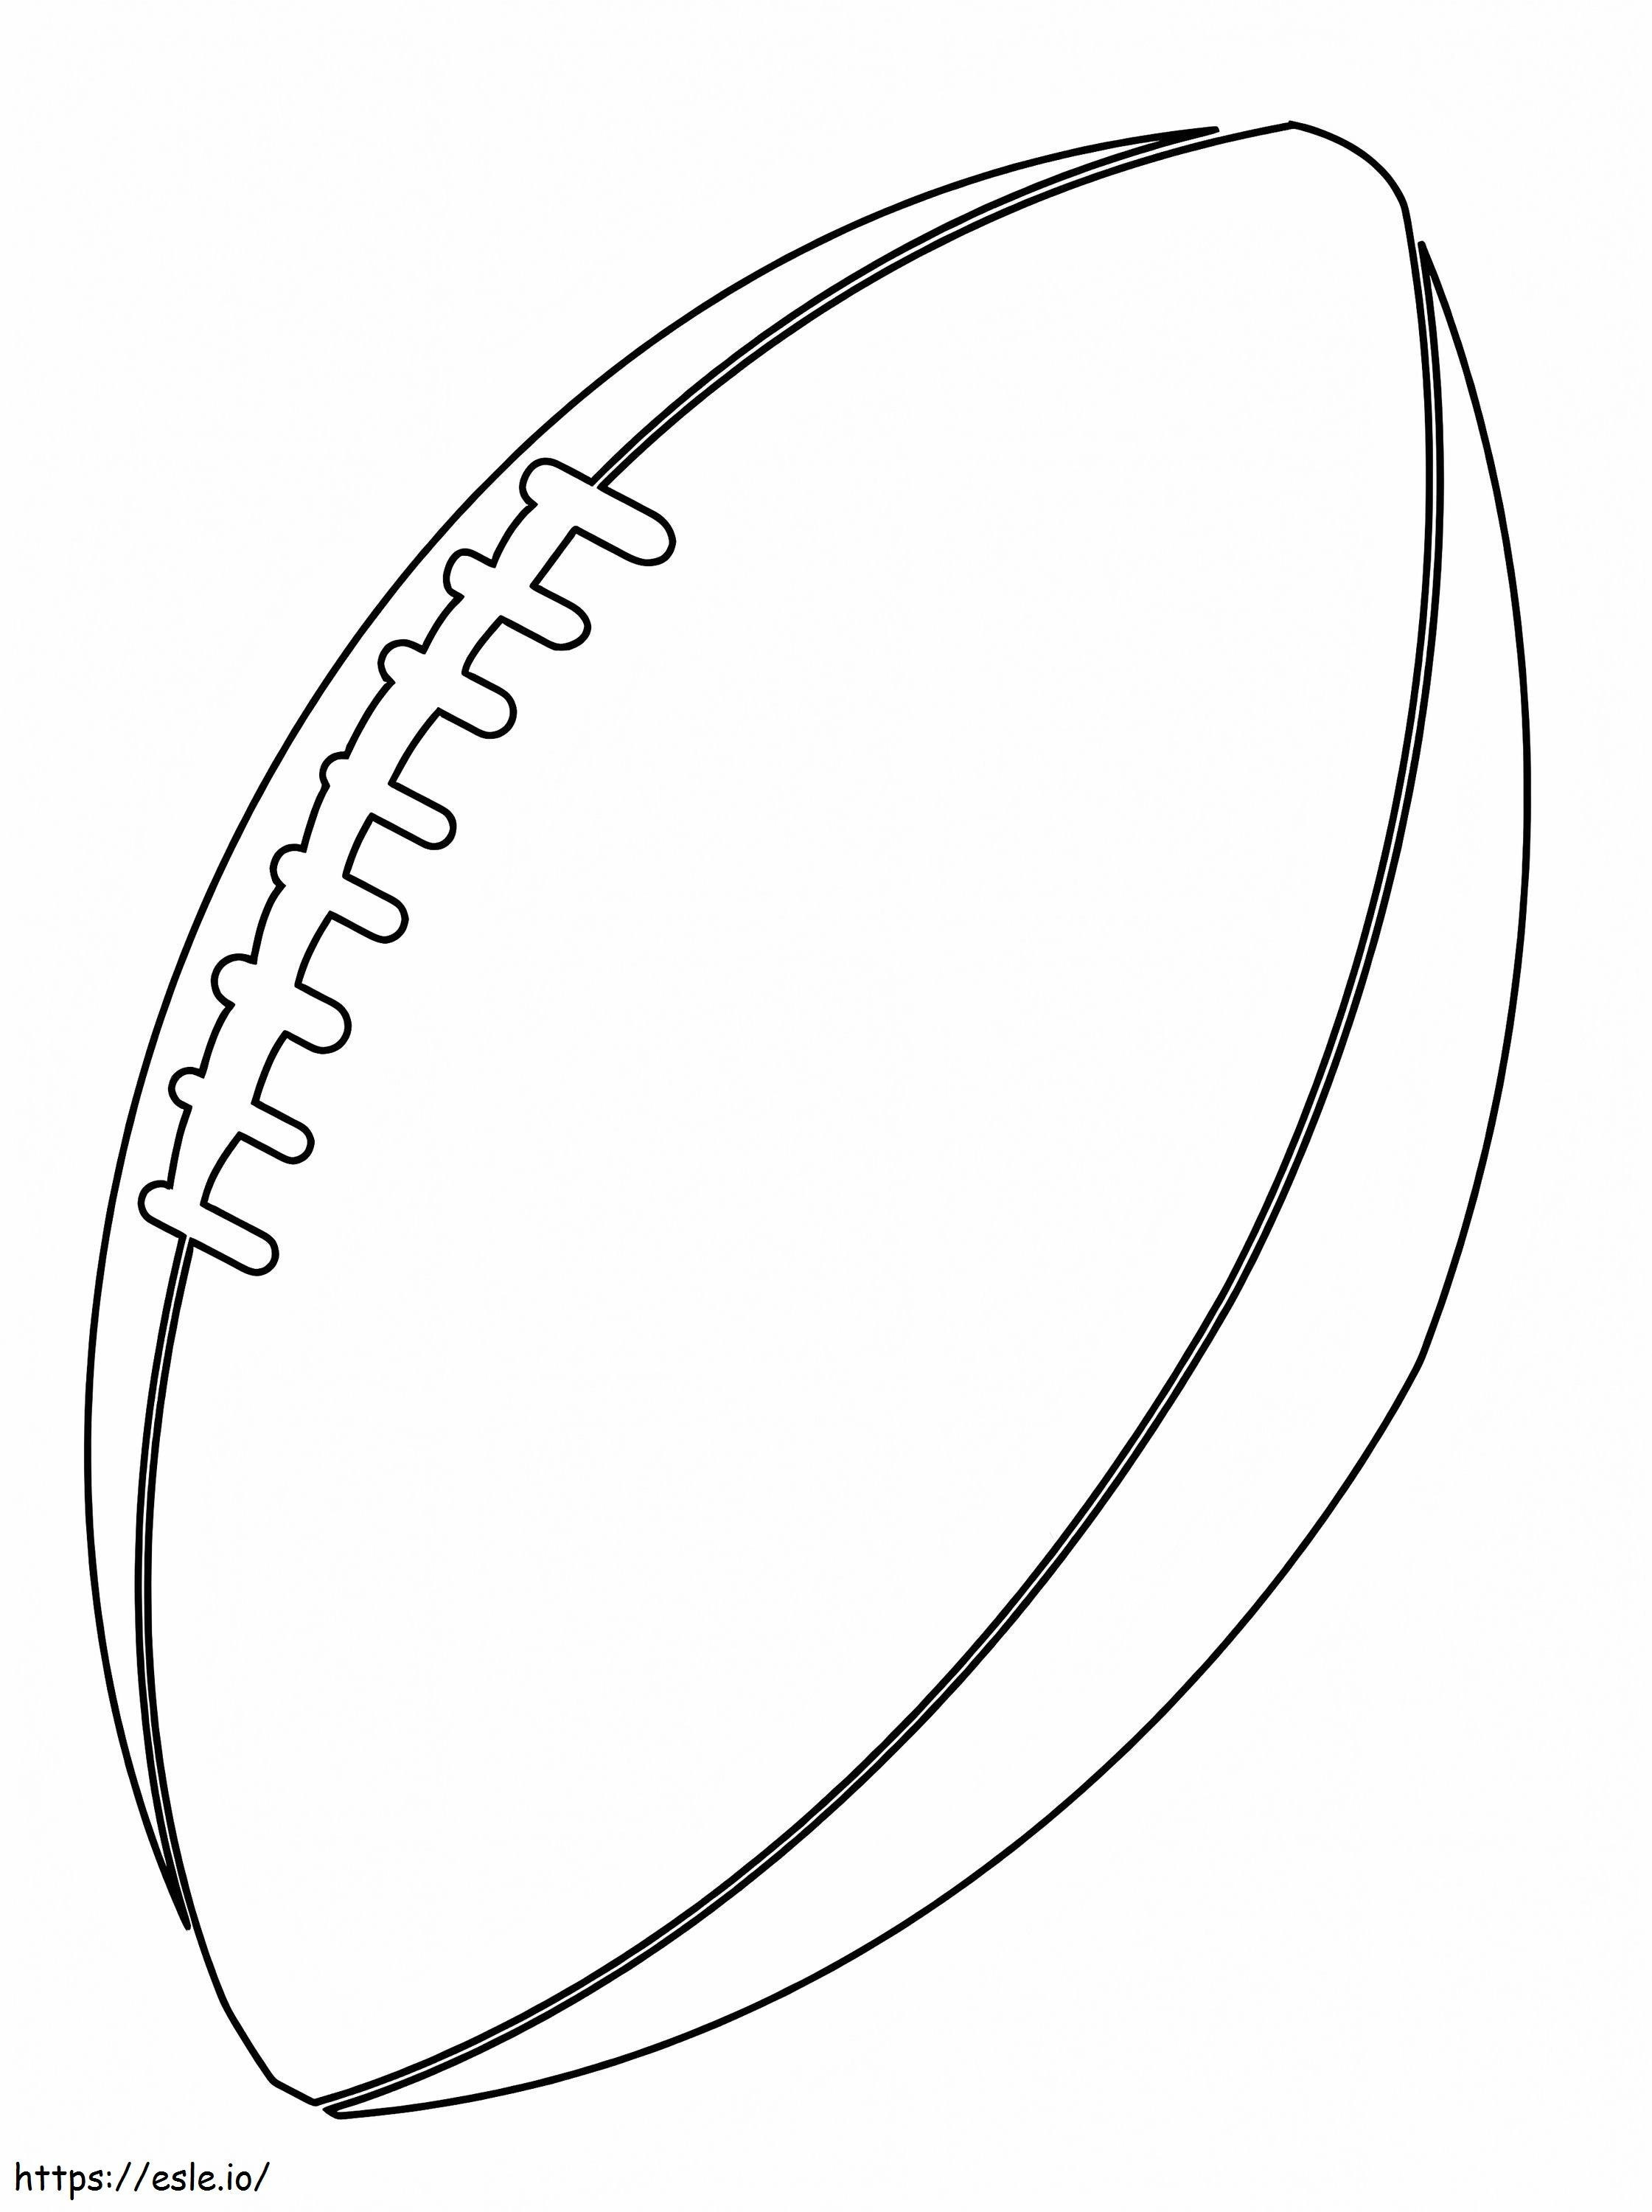 bola de futebol americano para colorir